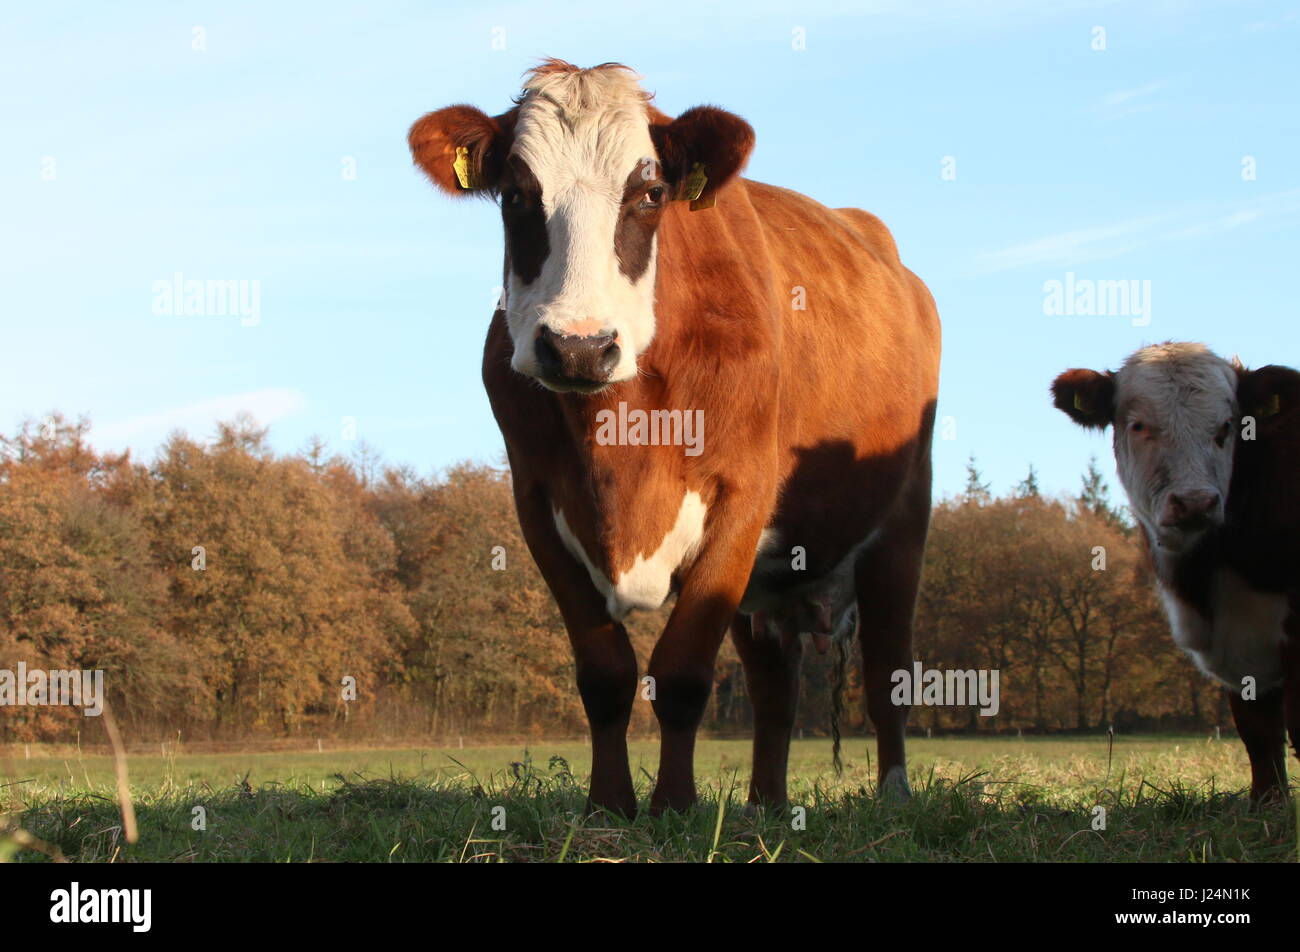 Traditionelle Blaarkoppen Rinder ("Blister-Kopf"), eine alte holländische Rasse gefunden, vor allem im Norden der Niederlande Groningen Provinz Stockfoto